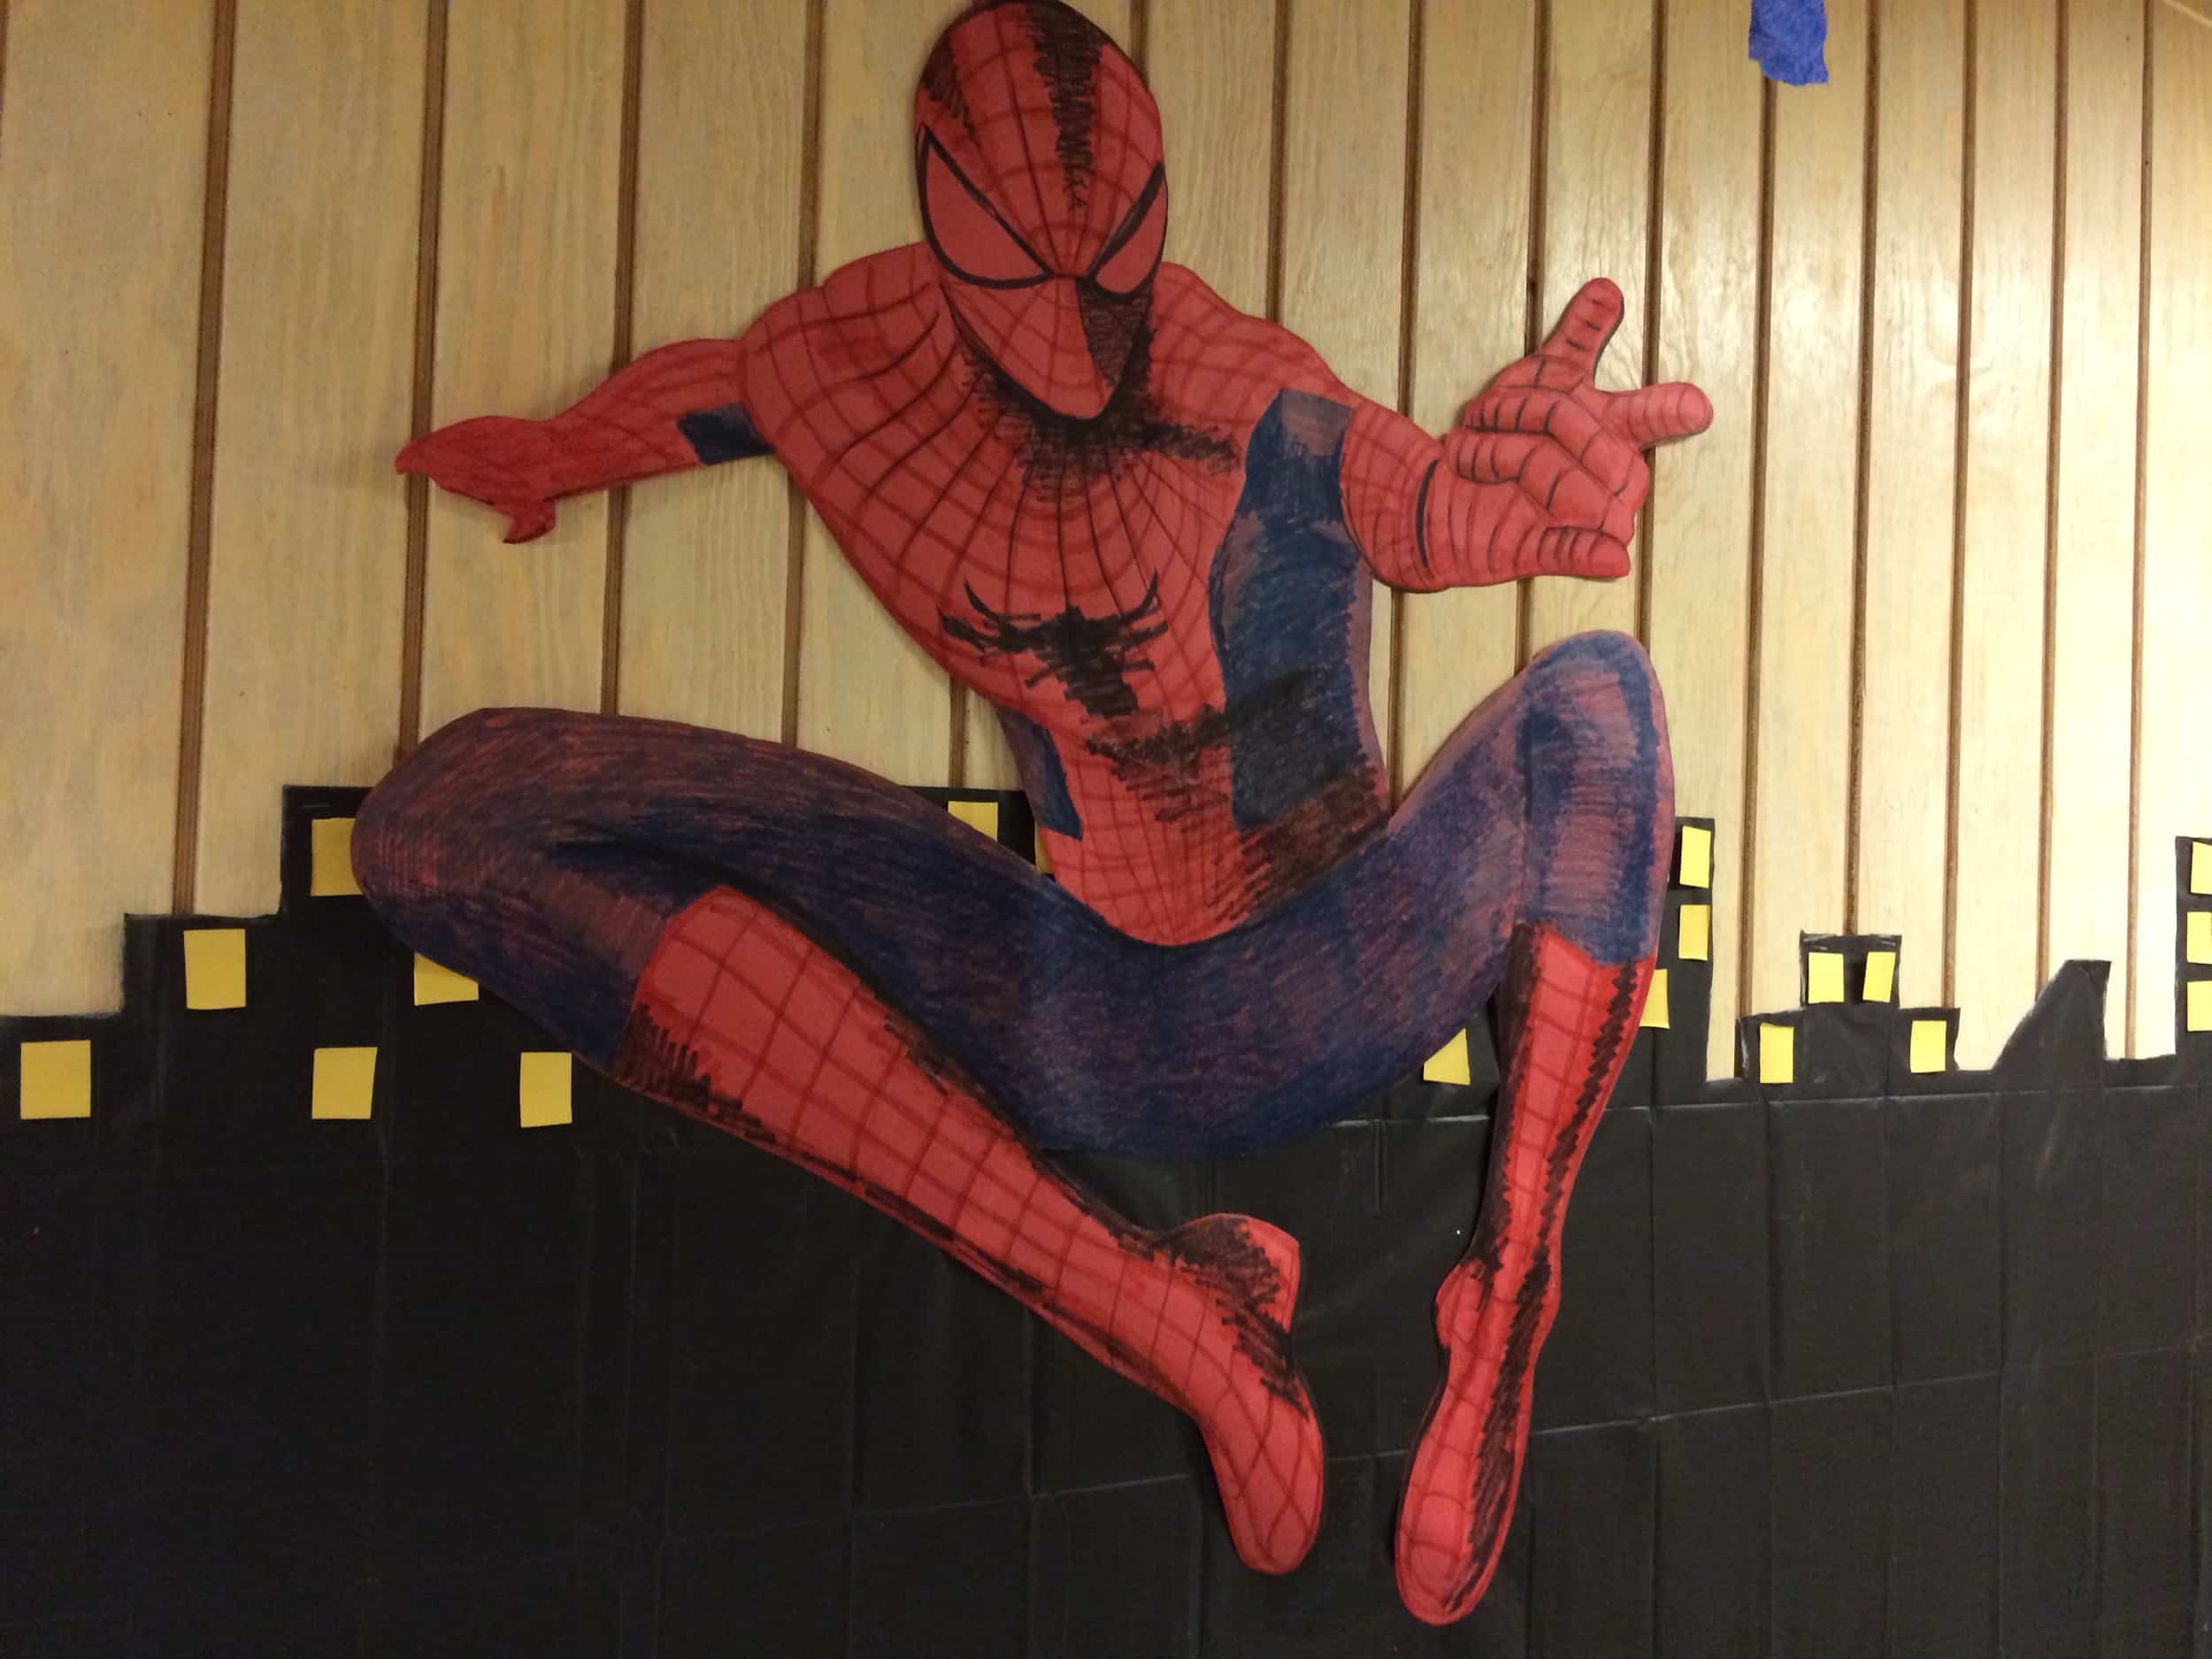 Spiderman hung out at Horton-Tingle.